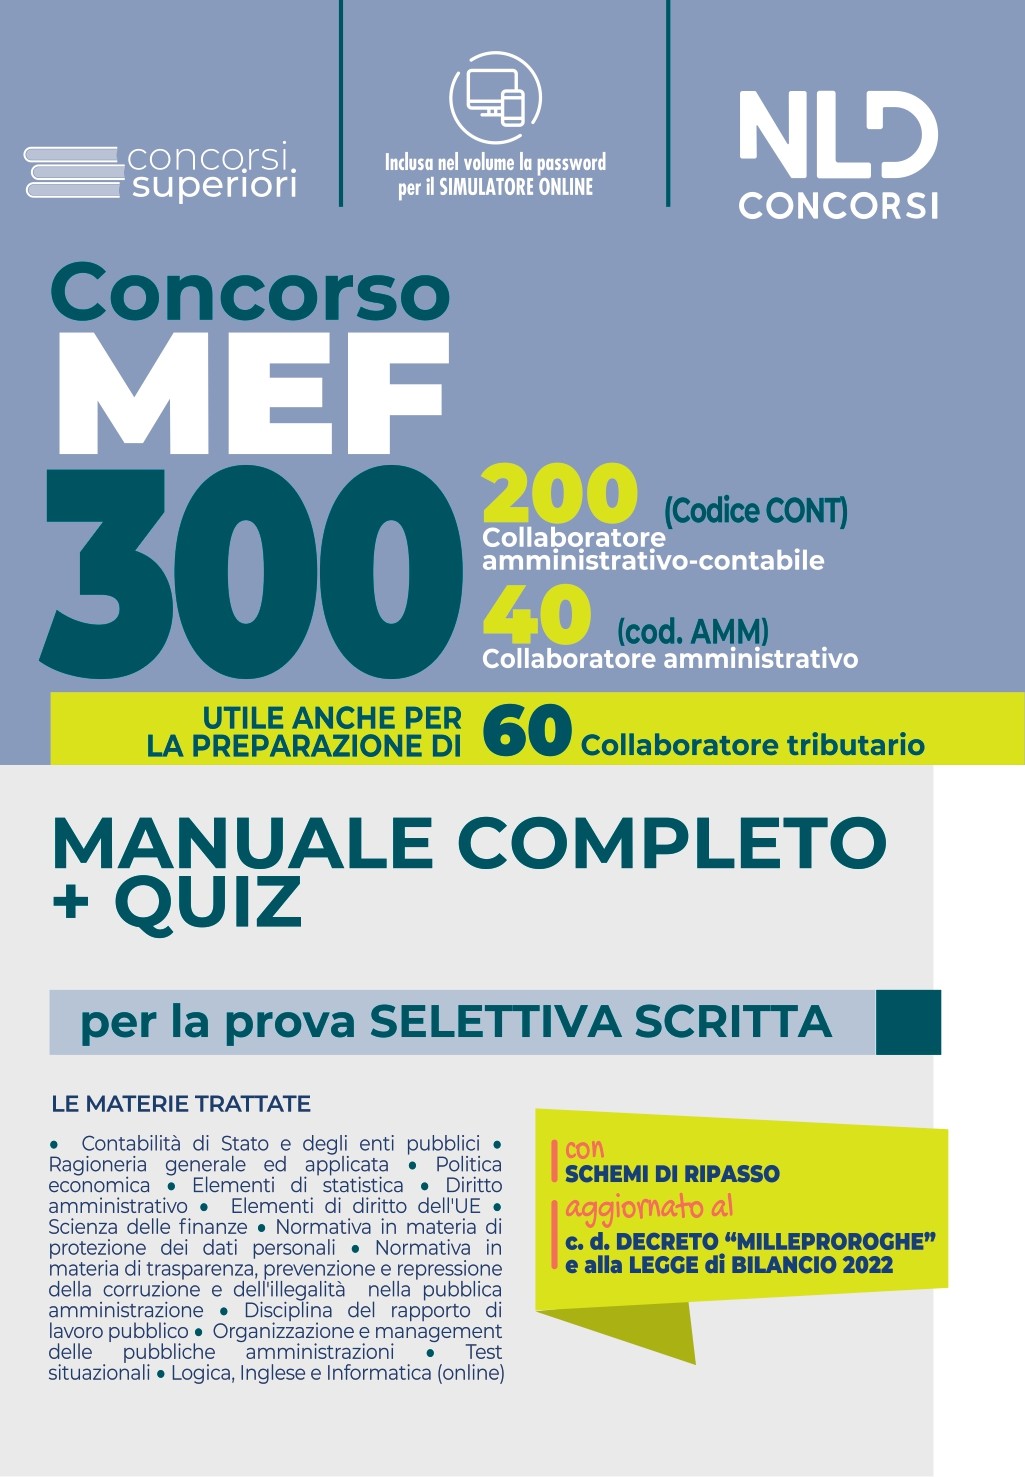 Concorso 300 MEF: MANUALE COMPLETO + QUIZ per la prova preselettiva scritta  CONCORSO 300 POSTI MEF (200 Collaboratori Amministrativi Contabili +  60 Collaboratori Tributari + 40 Collaboratori Amministrativi (2)